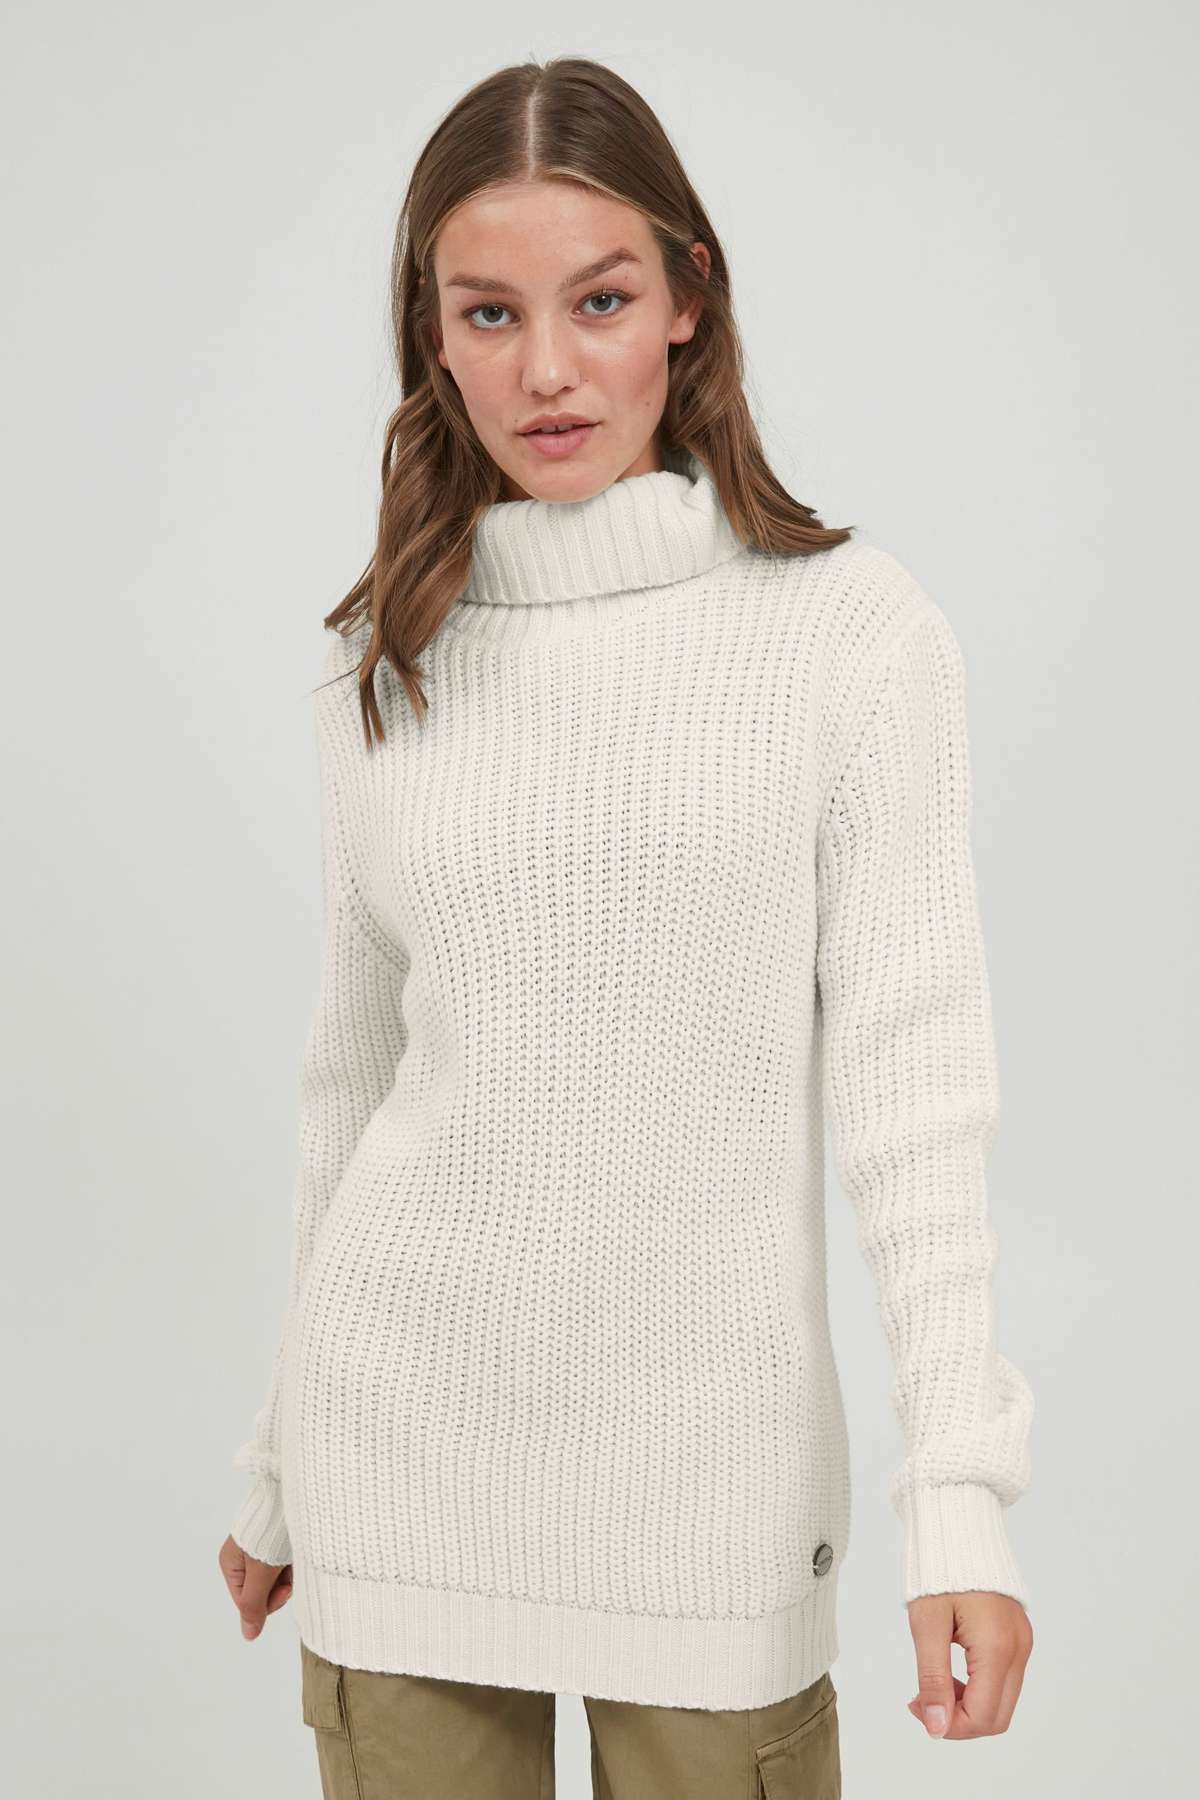 Вязаный свитер OXNanna Свитер крупной вязки с водолазкой